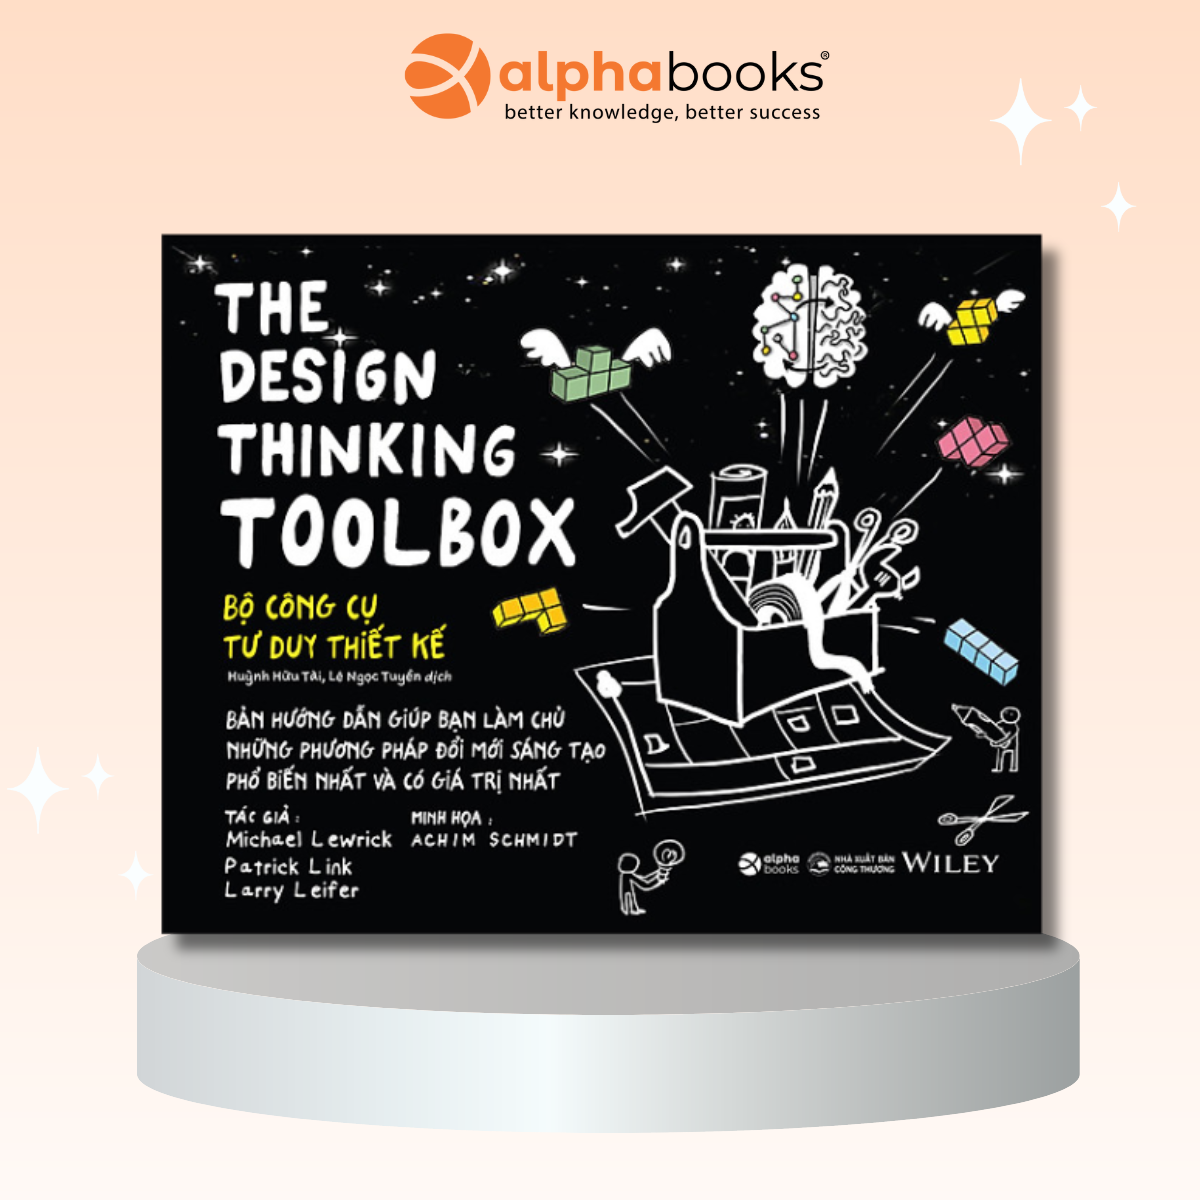 The Design Thinking Toolbox - Bộ Công Cụ Tư Duy Thiết Kế (*** Sách Bản Quyền ***)